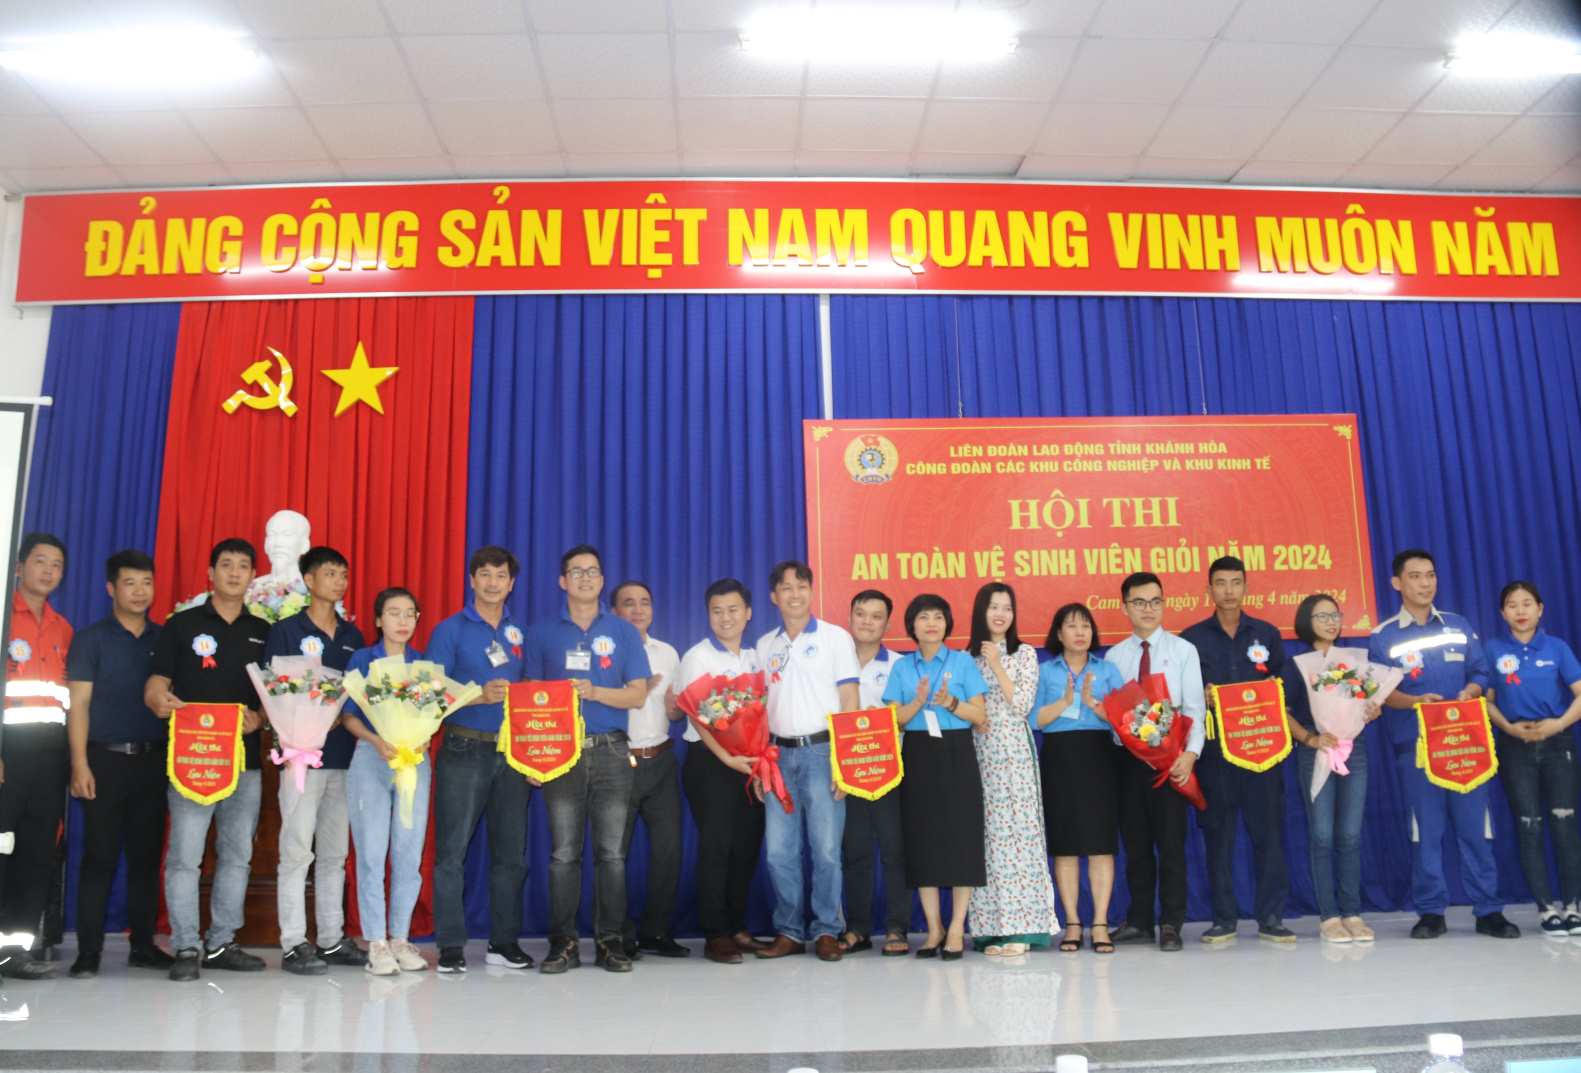 Ban tổ chức cuộc thi an toàn vệ sinh viên giỏi năm 2024 tặng cờ lưu niệm cho các đội tham gia. Ảnh: Phương Linh